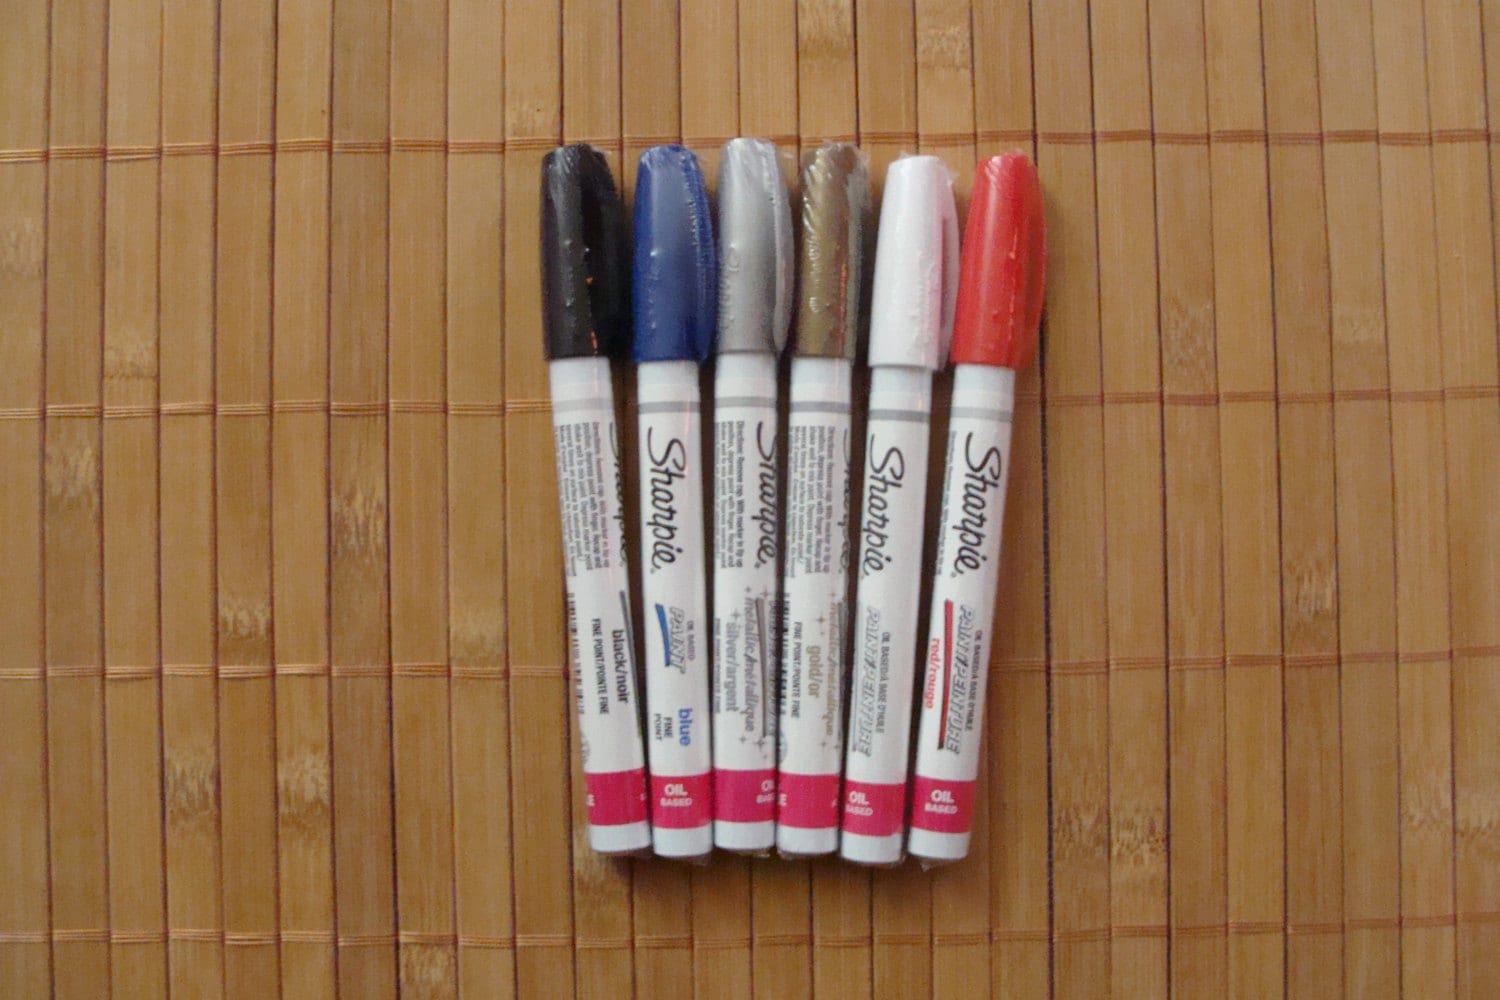 Brown Sharpie Paint Marker - Medium Point (Each)